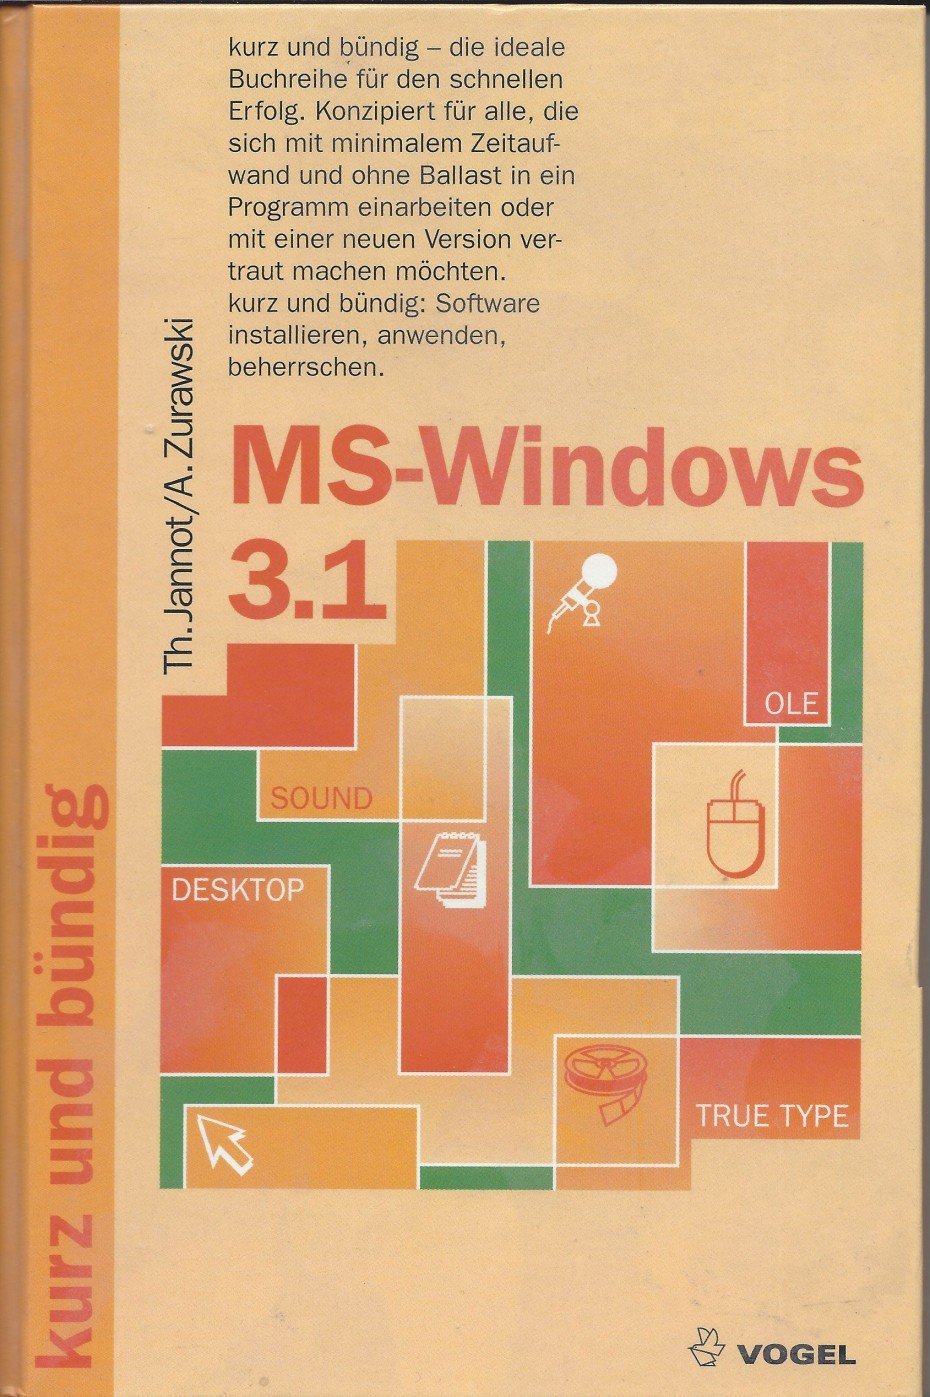 MS-Windows 3.1 kurz und bündig